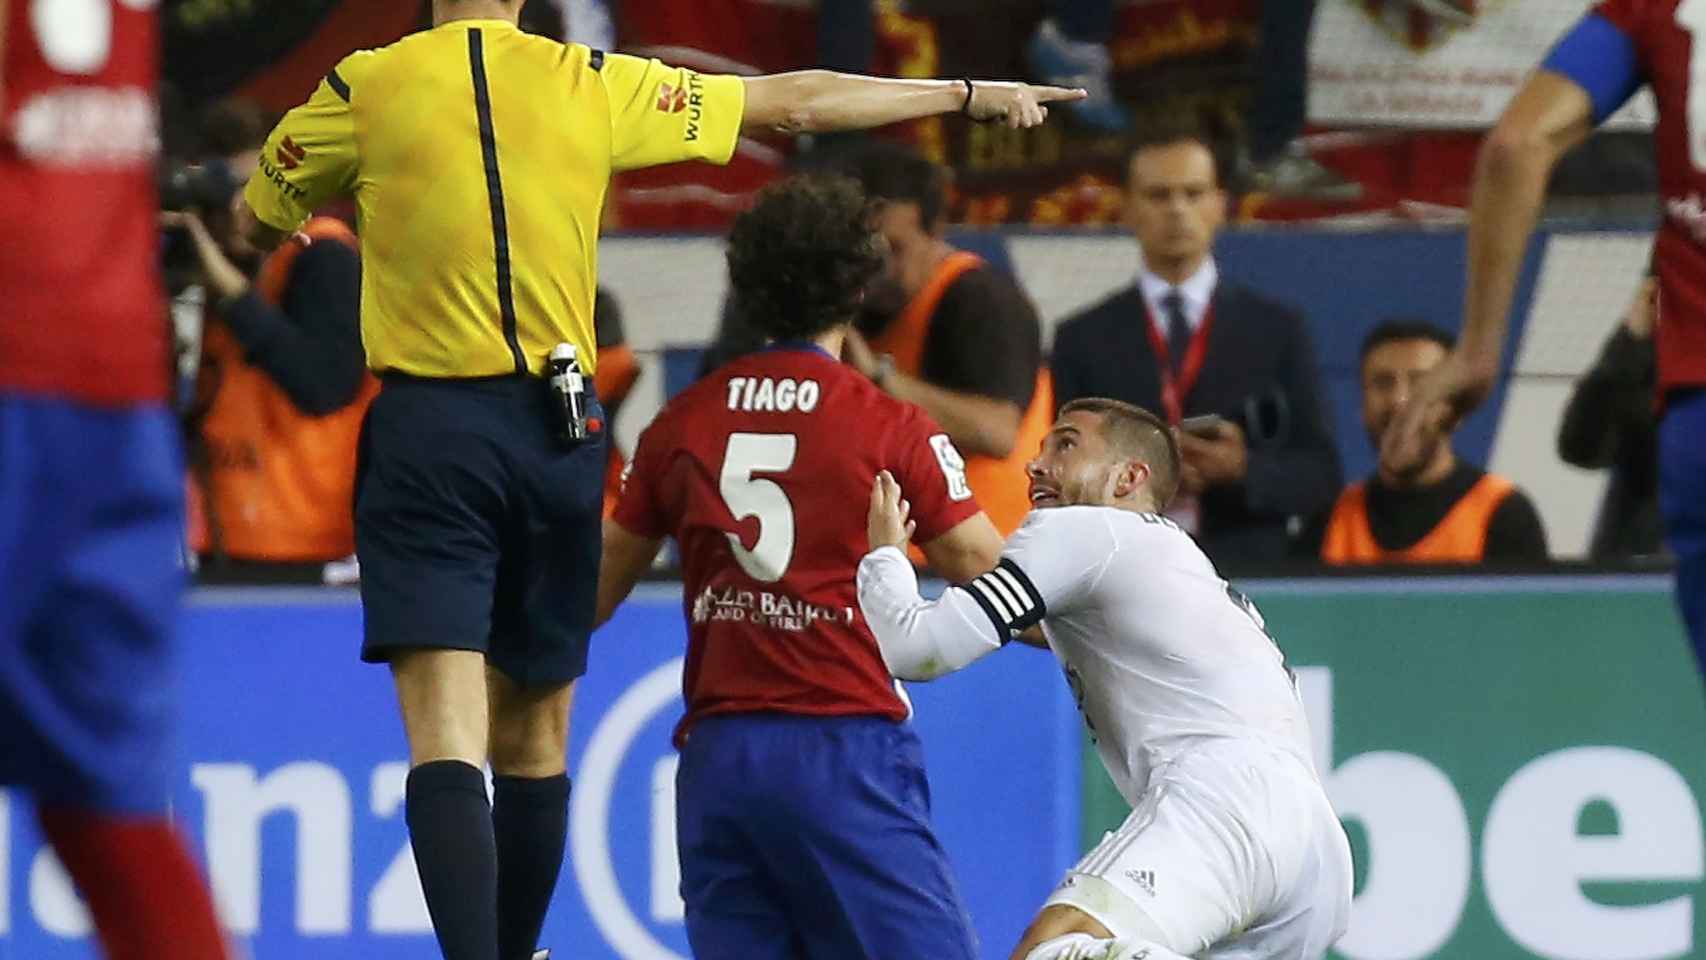 Ramos tras el penalti a Tiago en el derbi.